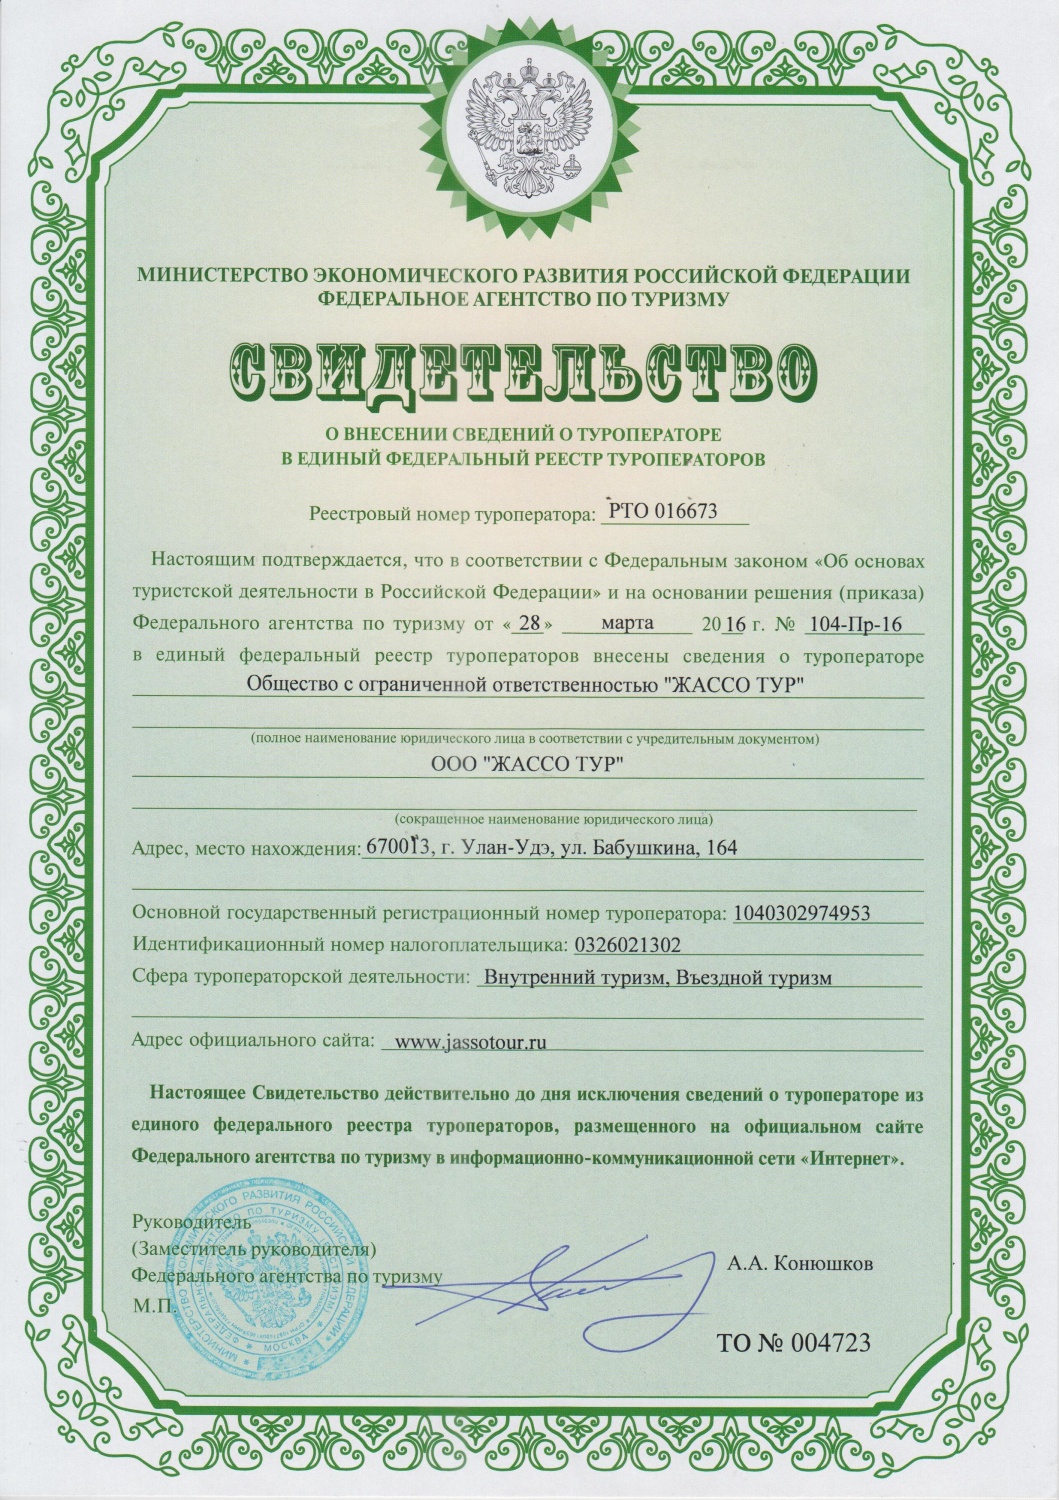 Сертификат о внесении туроператора в единый федеральный реестр туроператоров